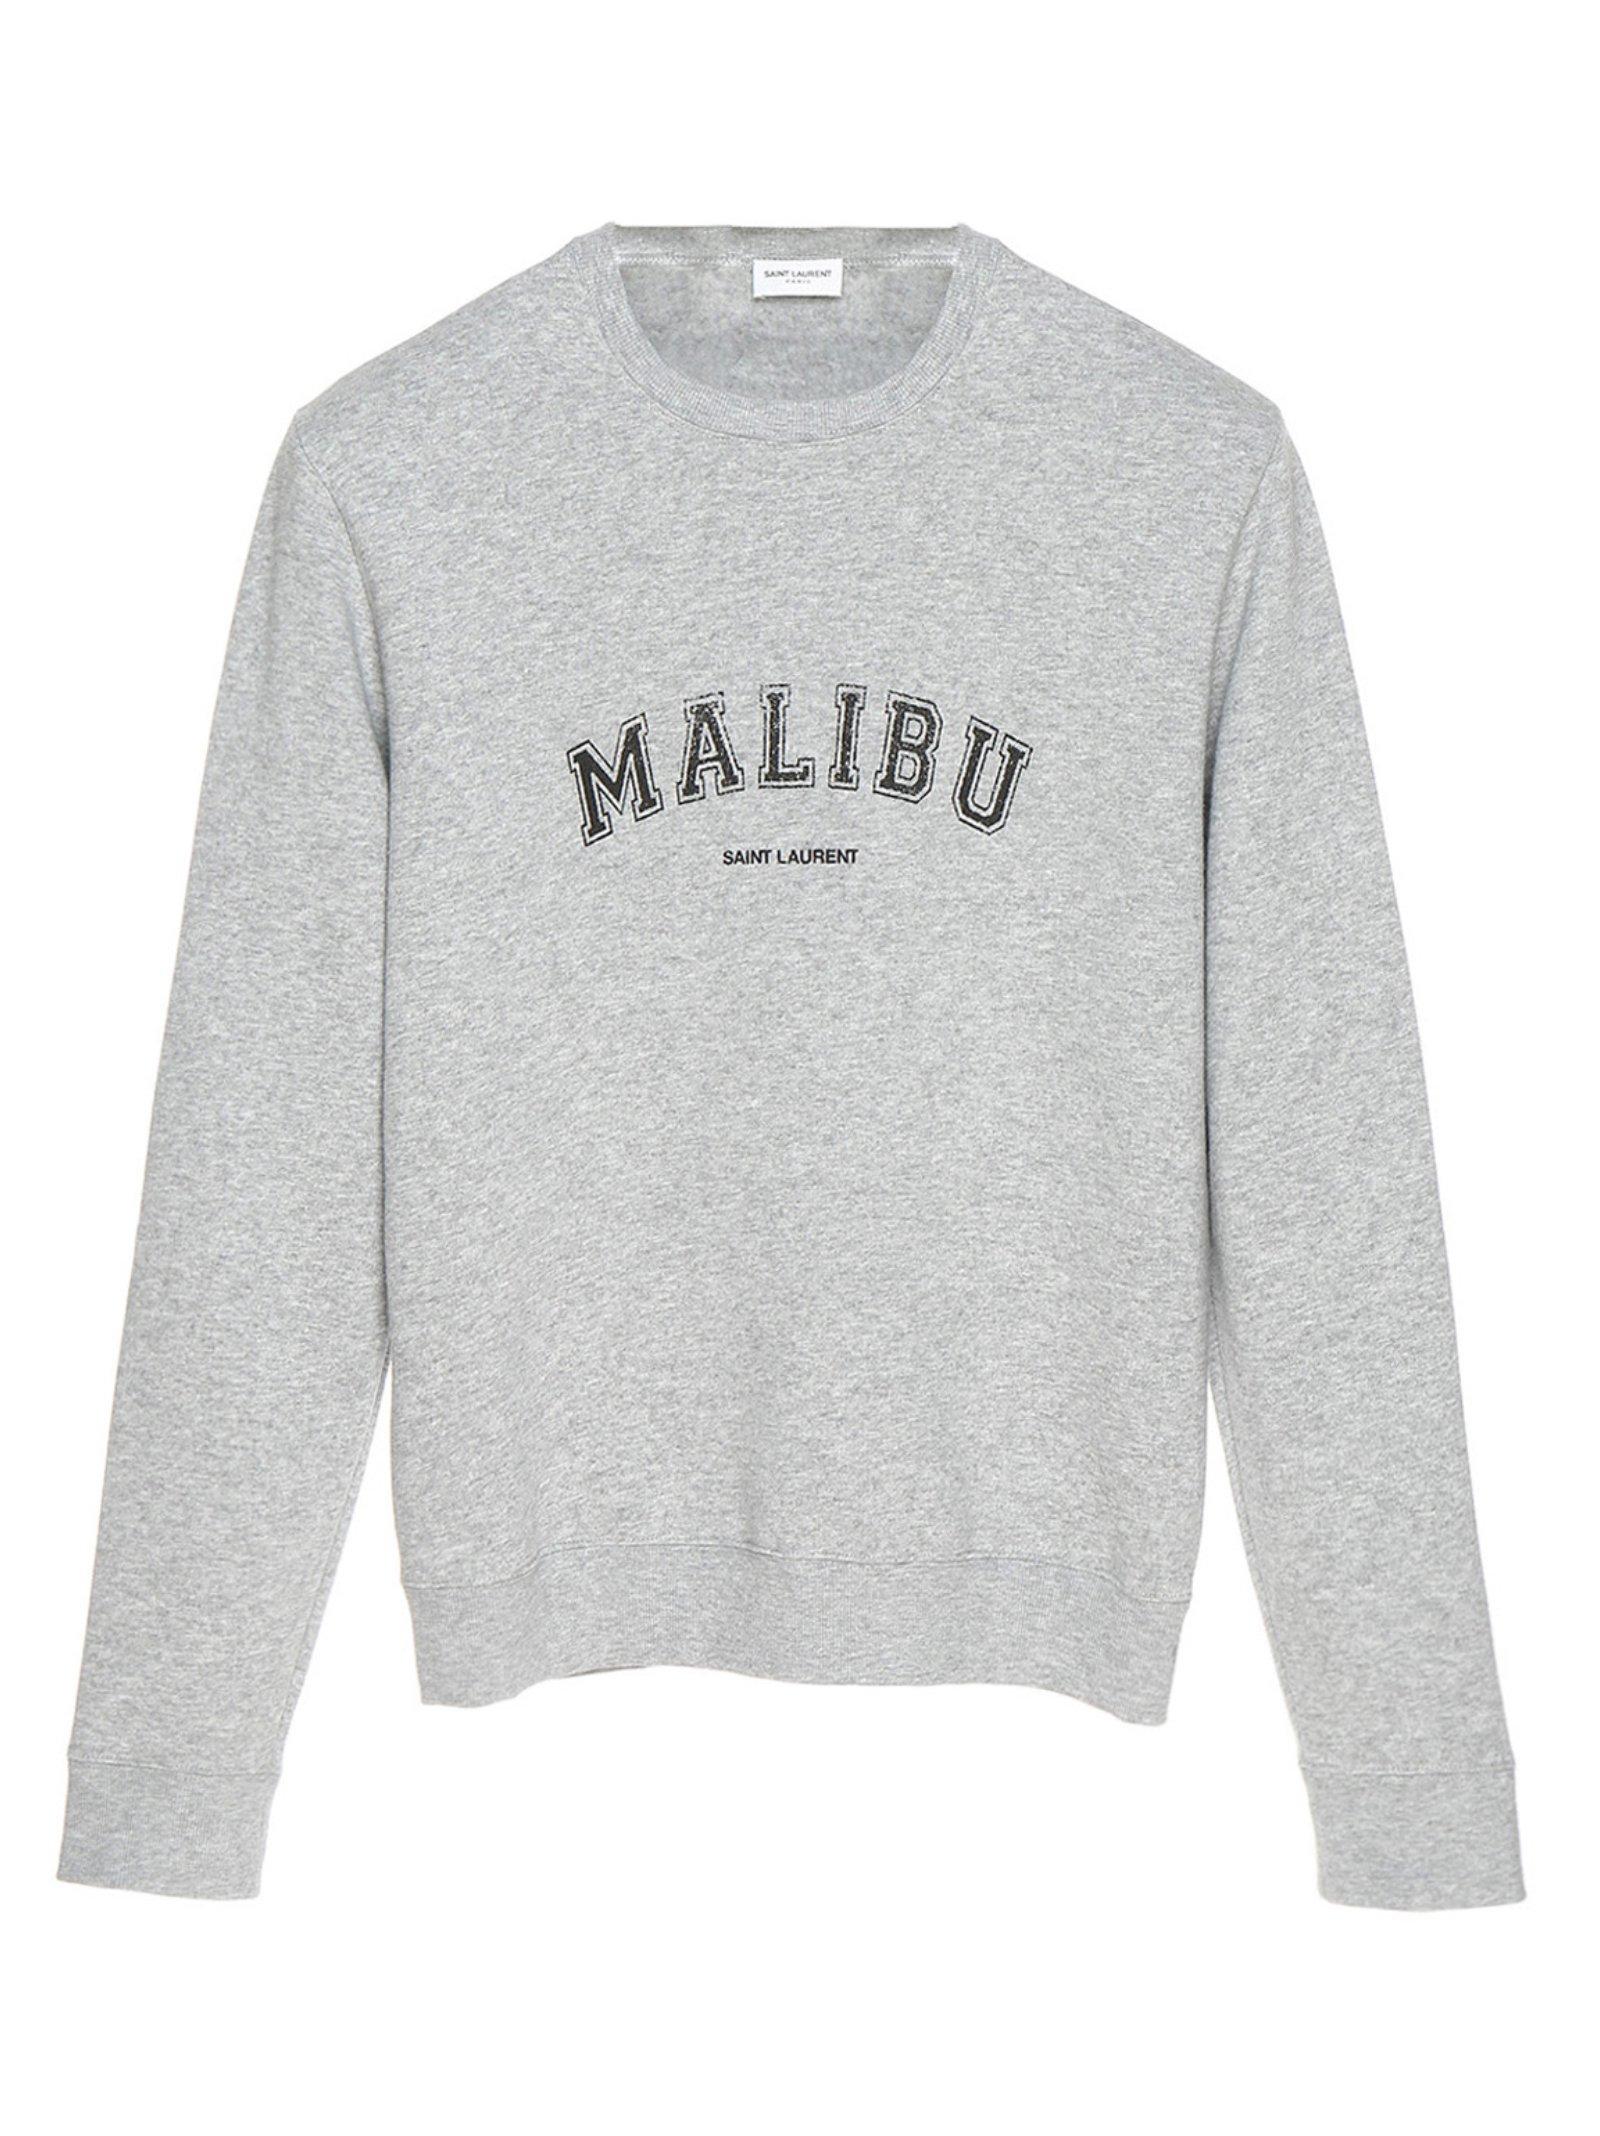 Saint Laurent Cotton Malibu Sweatshirt in Grey (Gray) for Men - Lyst